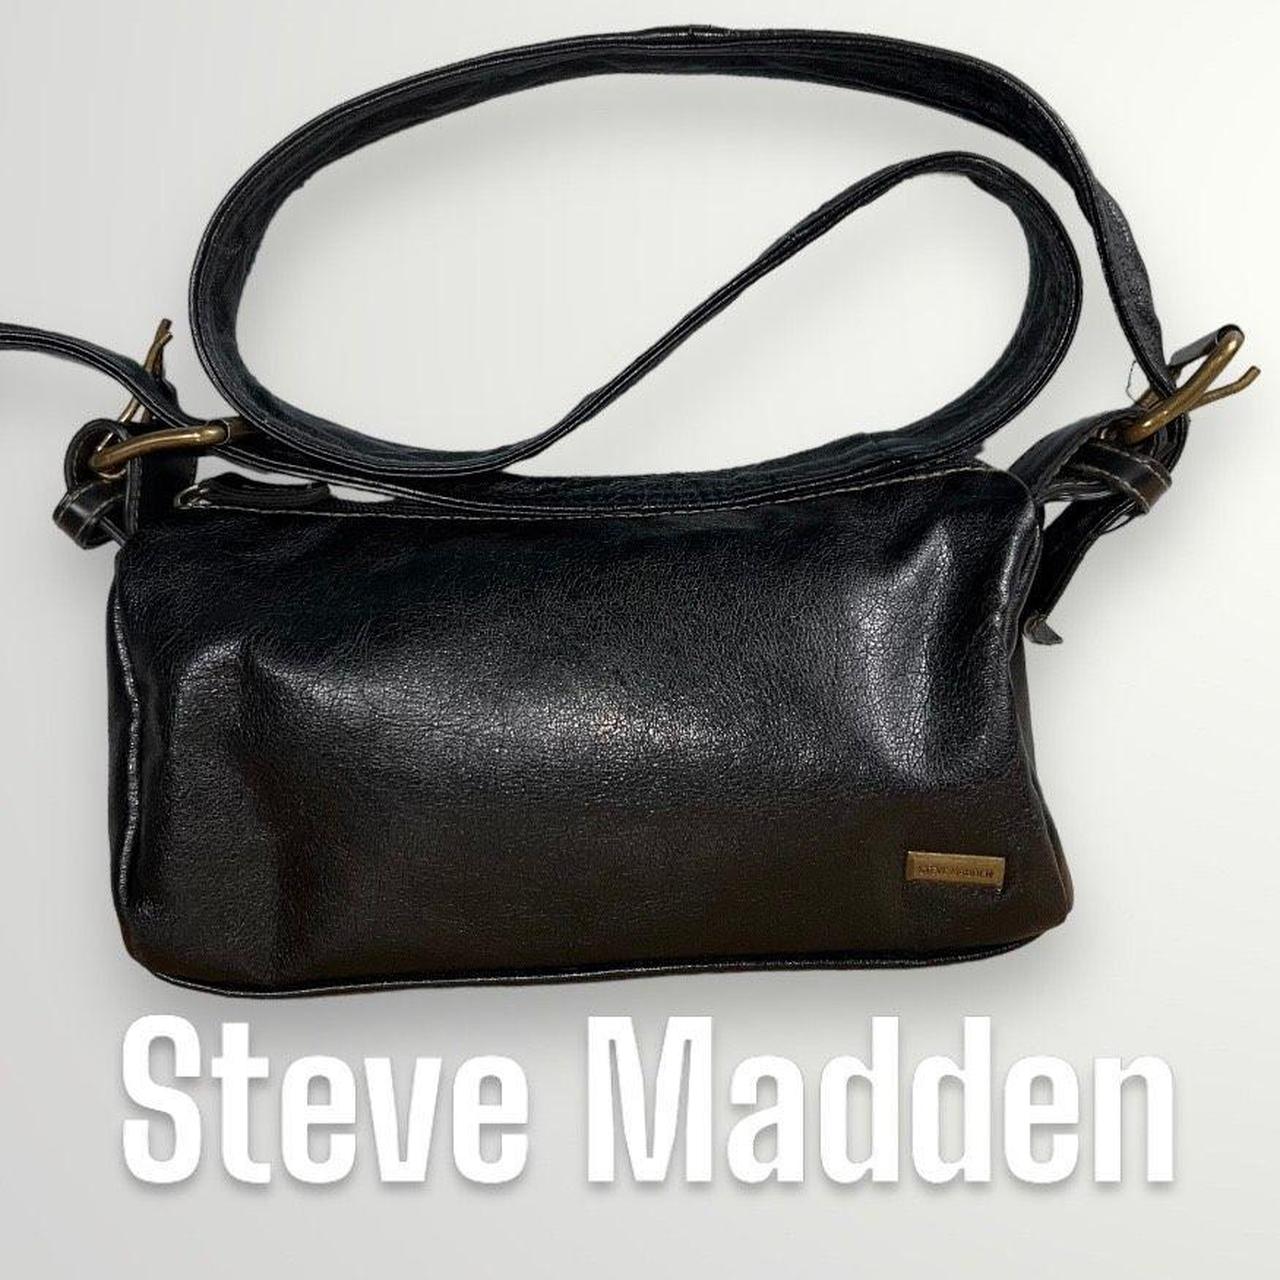 Steve Madden Women's Bags 